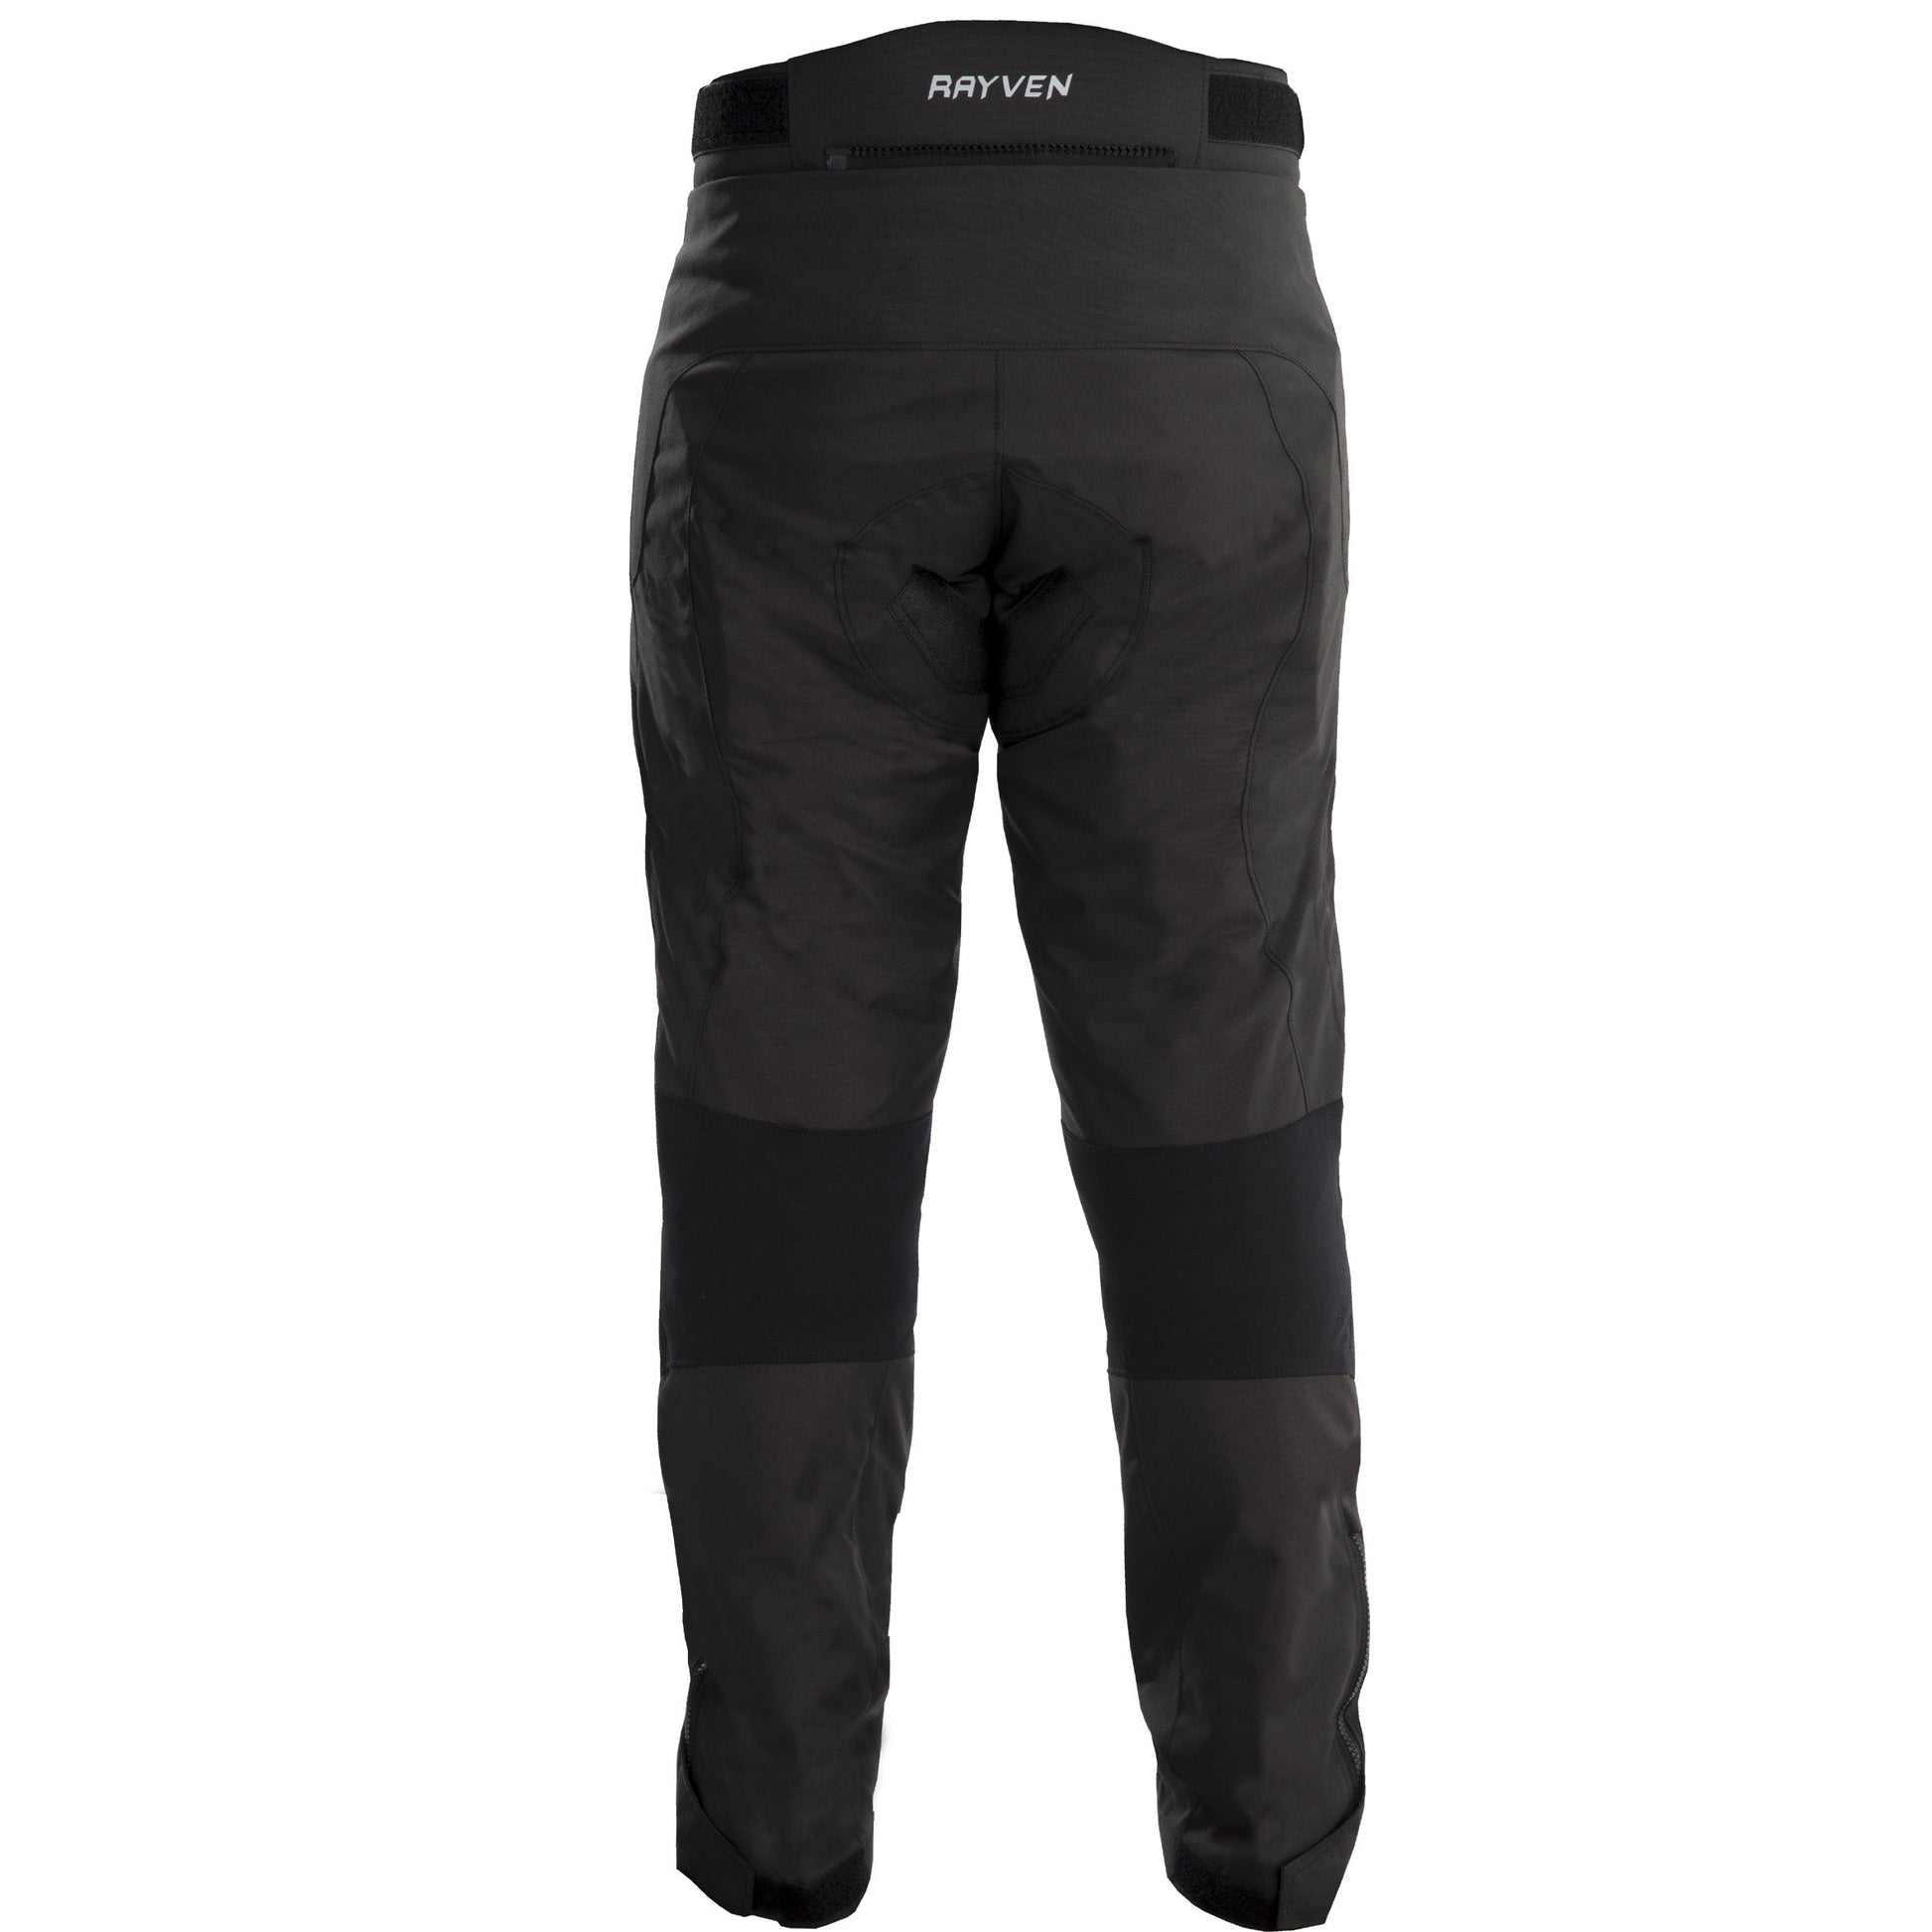 Riderwear | RAYVEN Road CE Waterproof Trouser - Short Leg